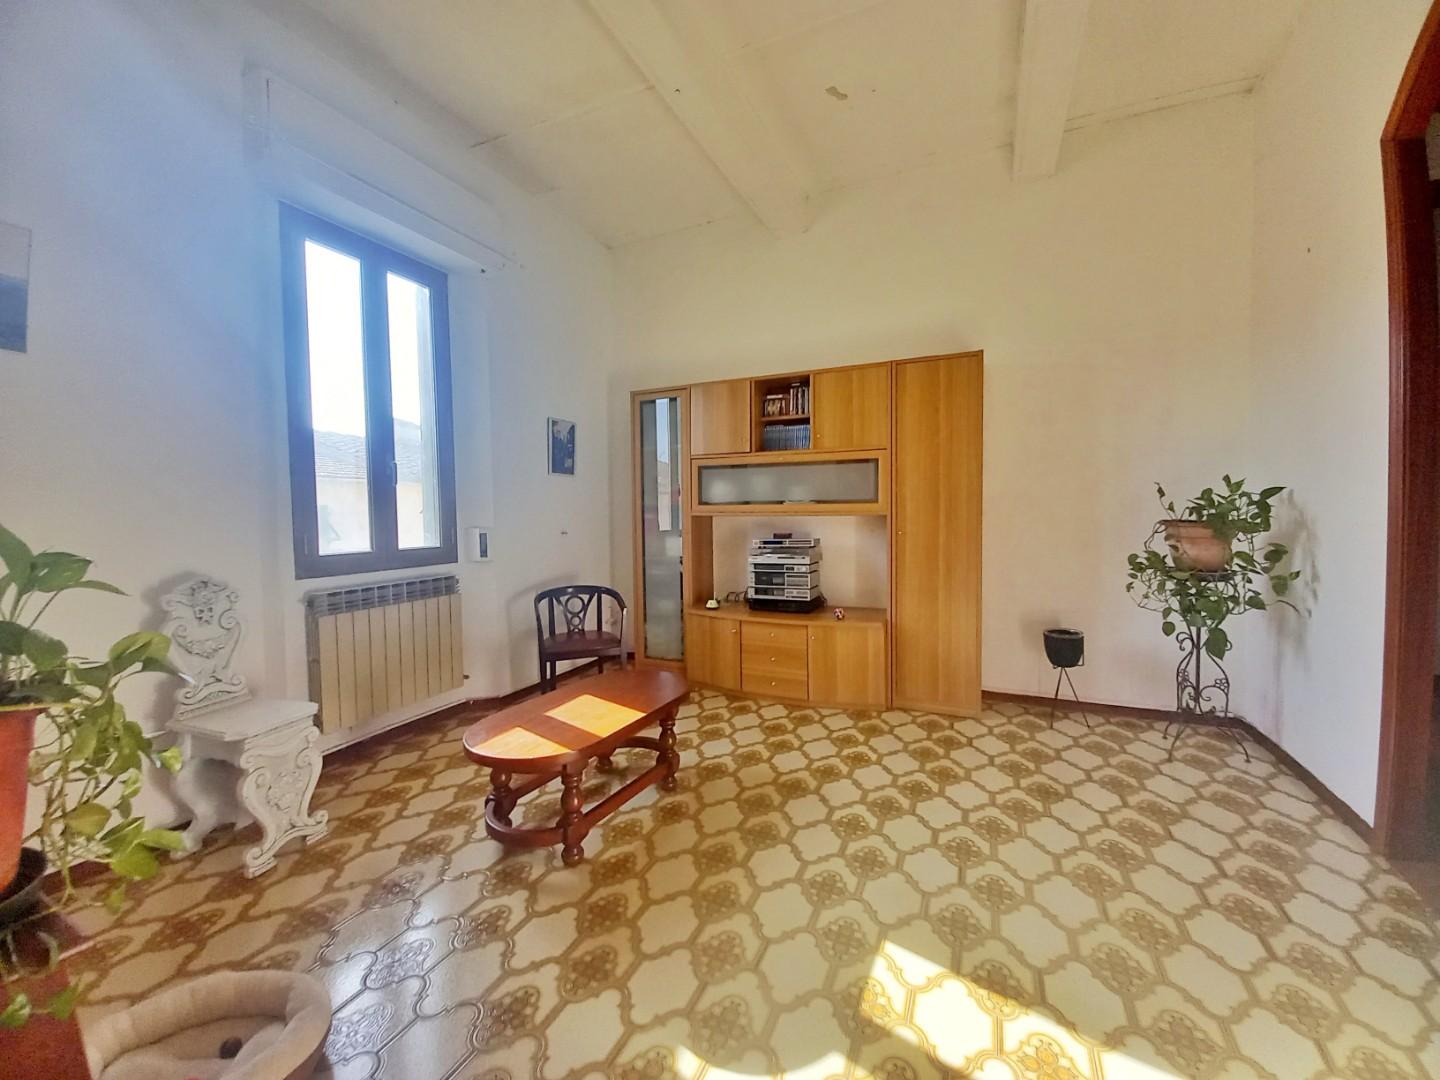 Appartamento in vendita a Certaldo, 7 locali, prezzo € 150.000 | PortaleAgenzieImmobiliari.it